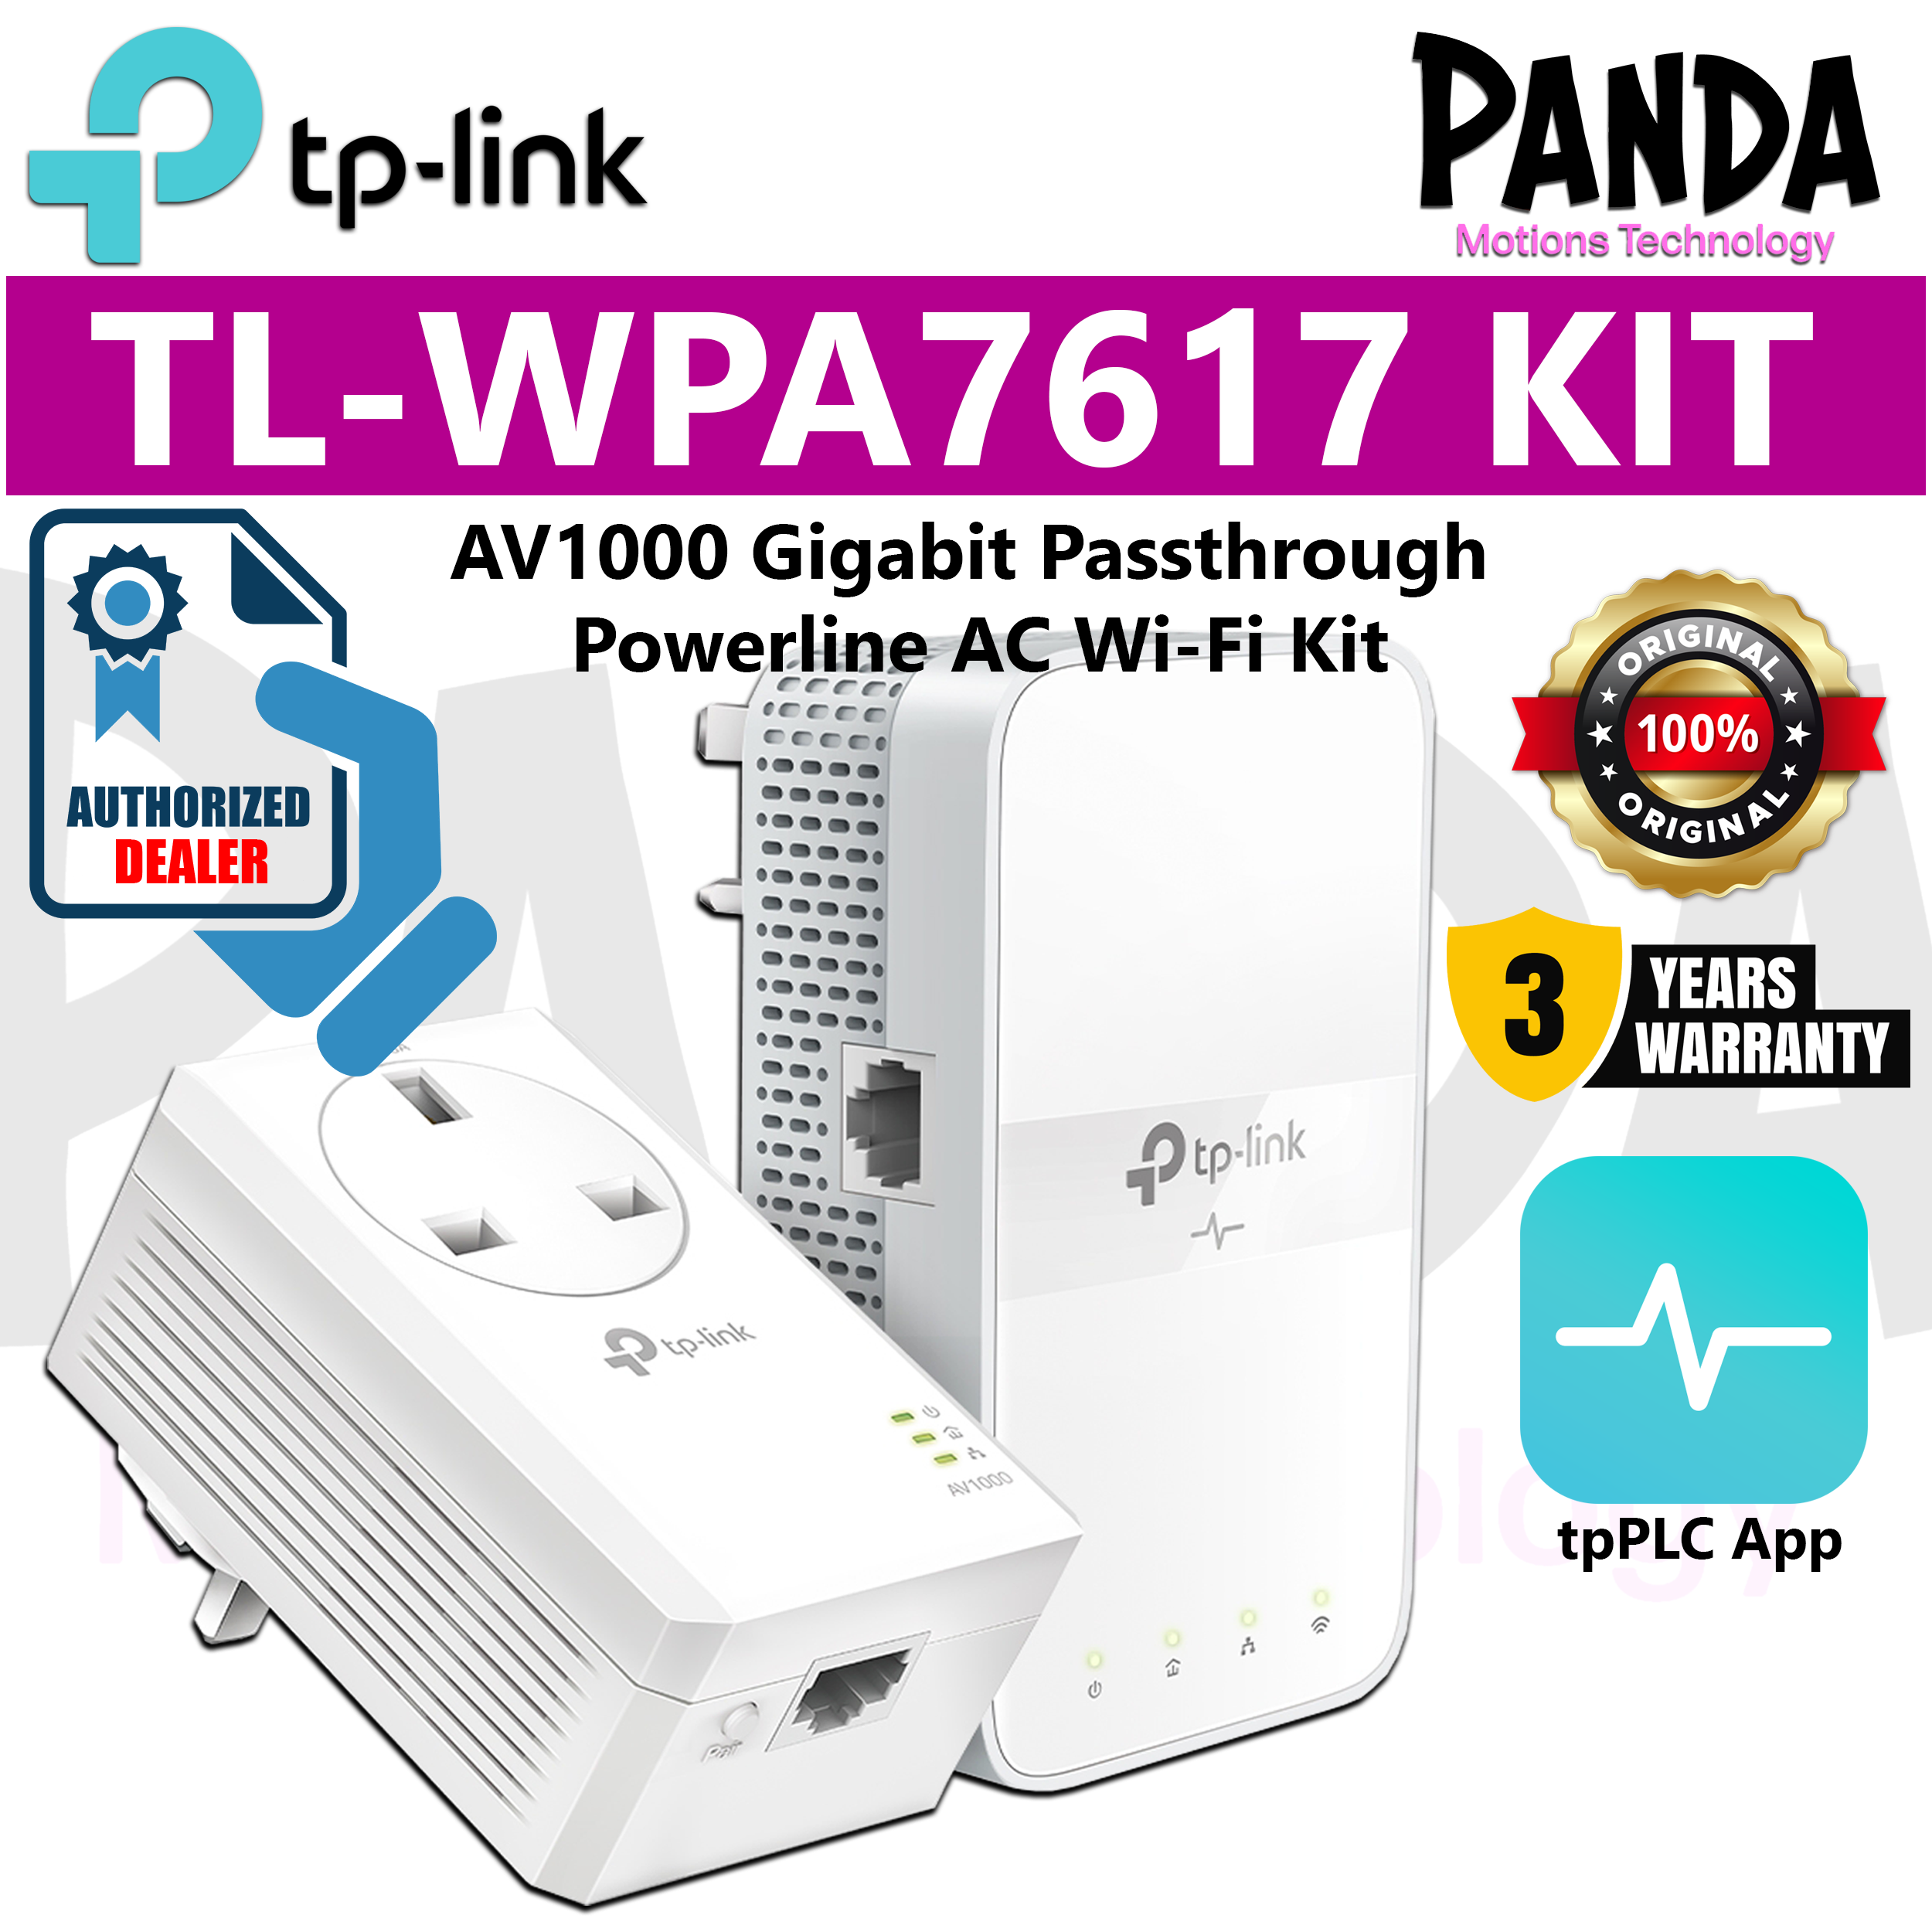 TP-Link TL-WPA7617 KIT AV1000 Gigabit Passthrough Powerline